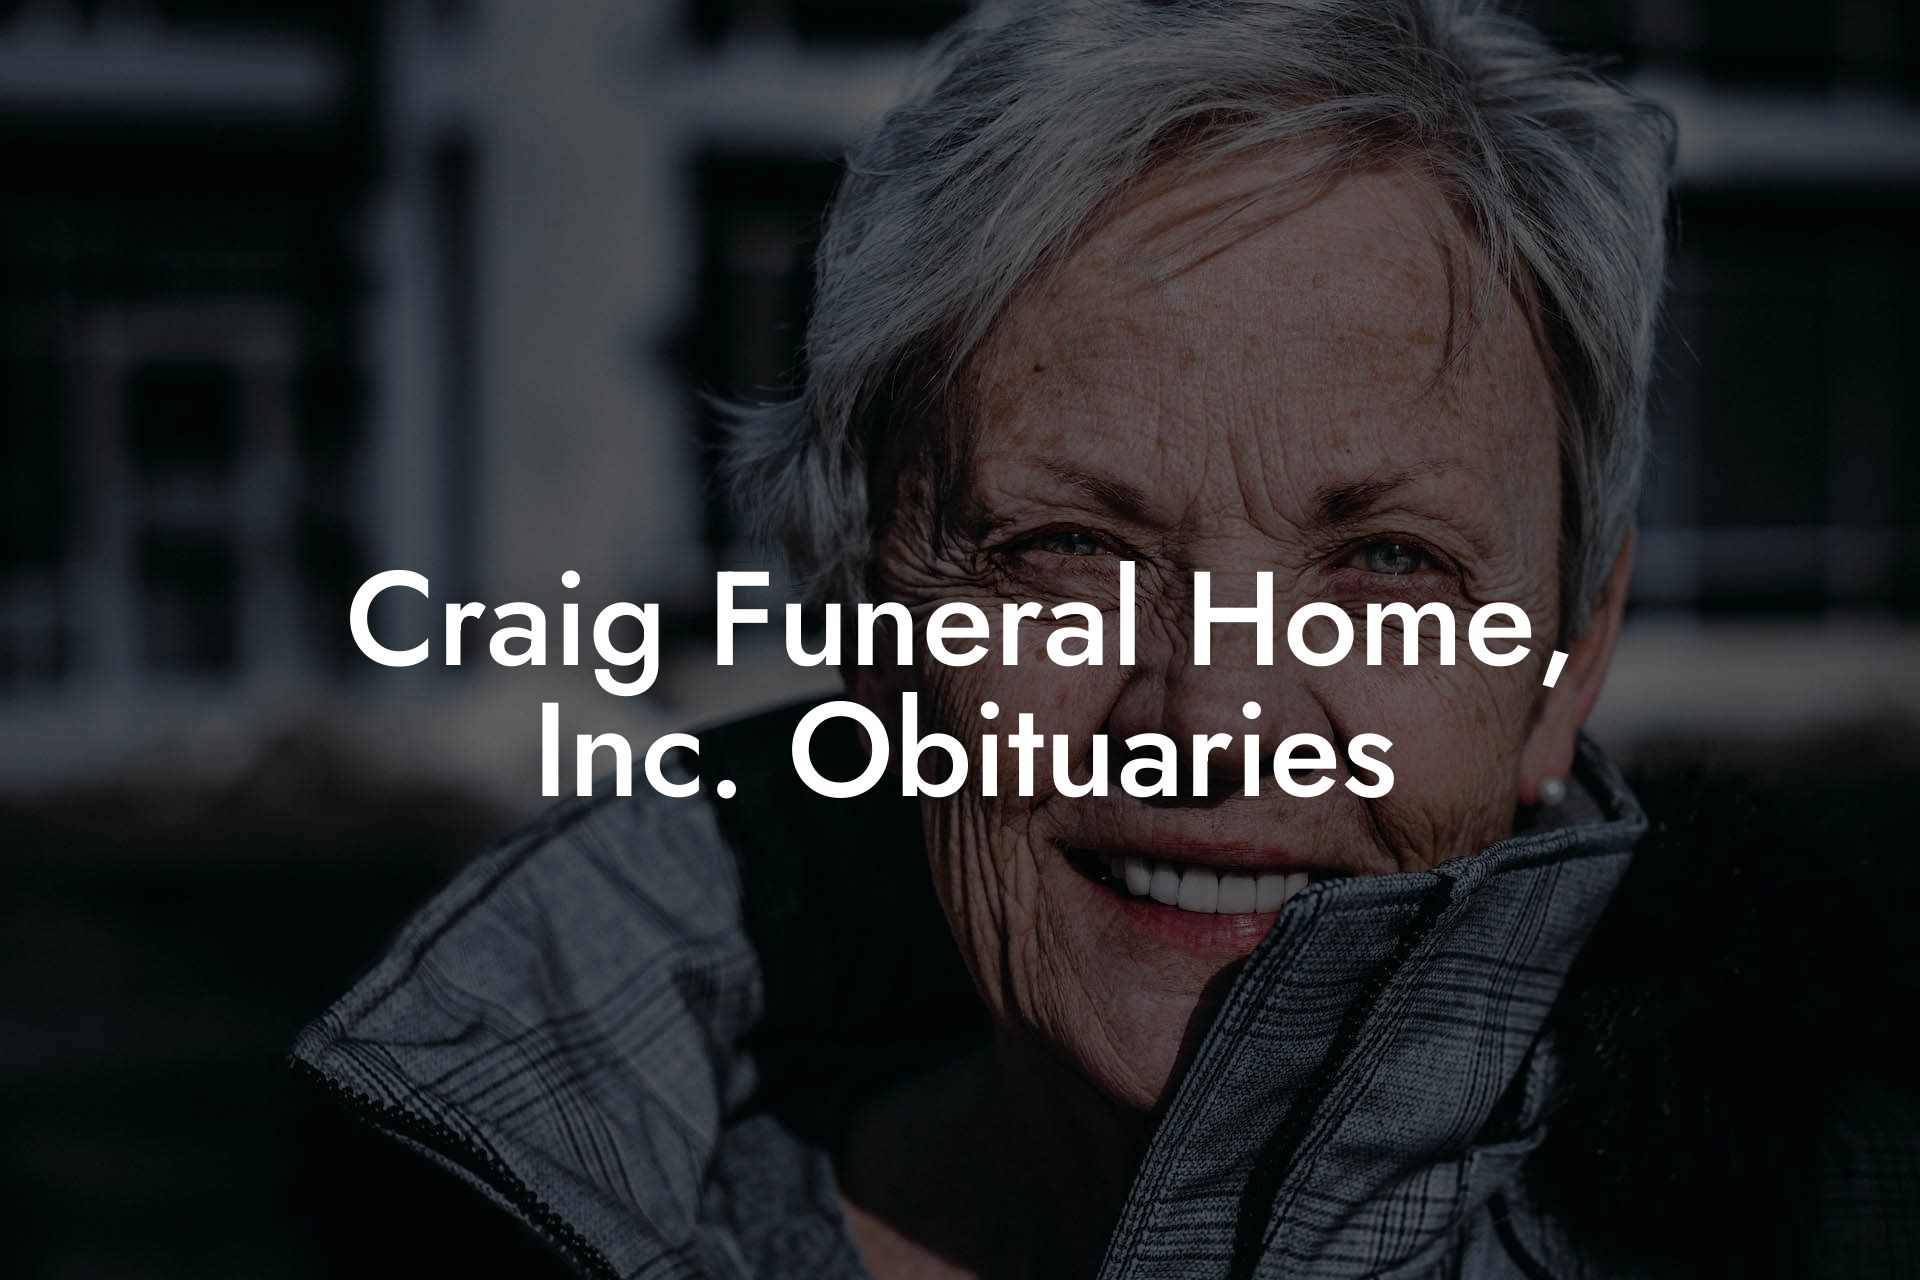 Craig Funeral Home, Inc. Obituaries